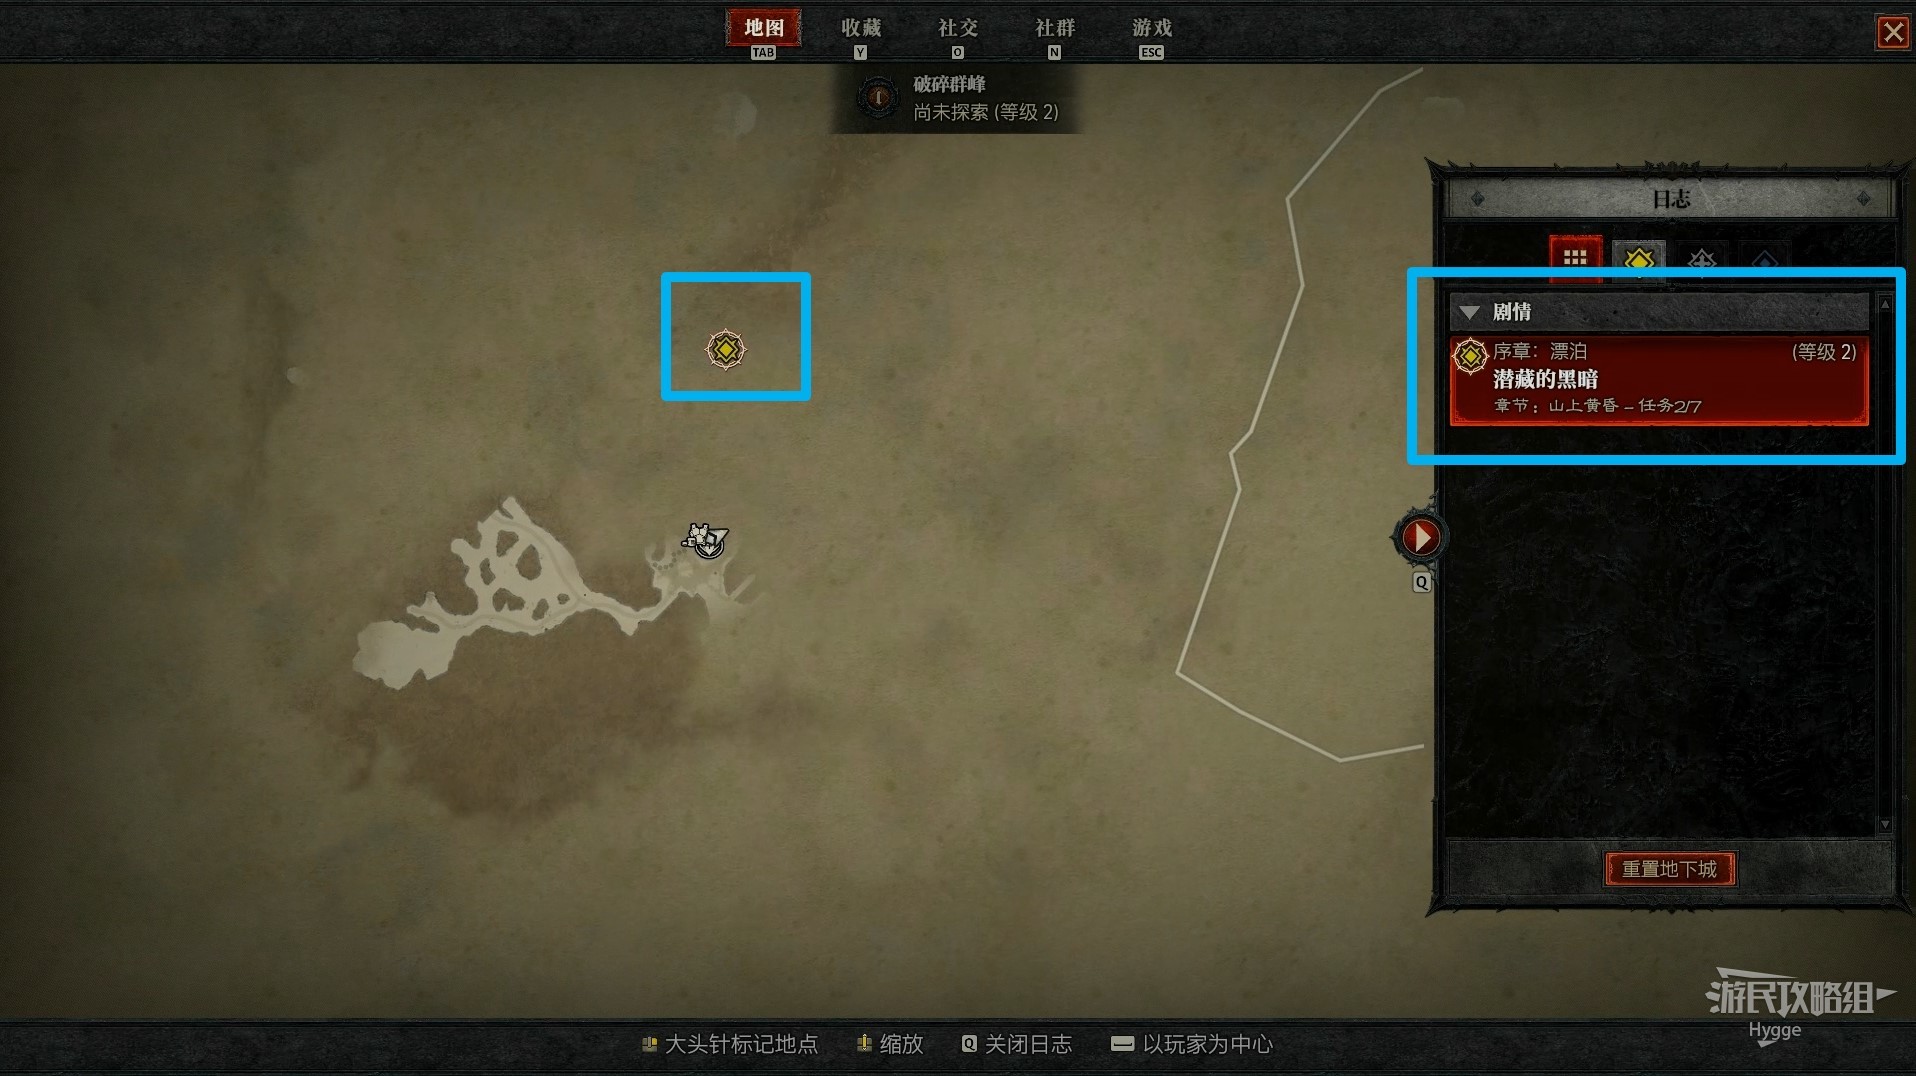 《暗黑破坏神4》新手入门图文攻略 游戏系统介绍与开荒指南 - 第5张